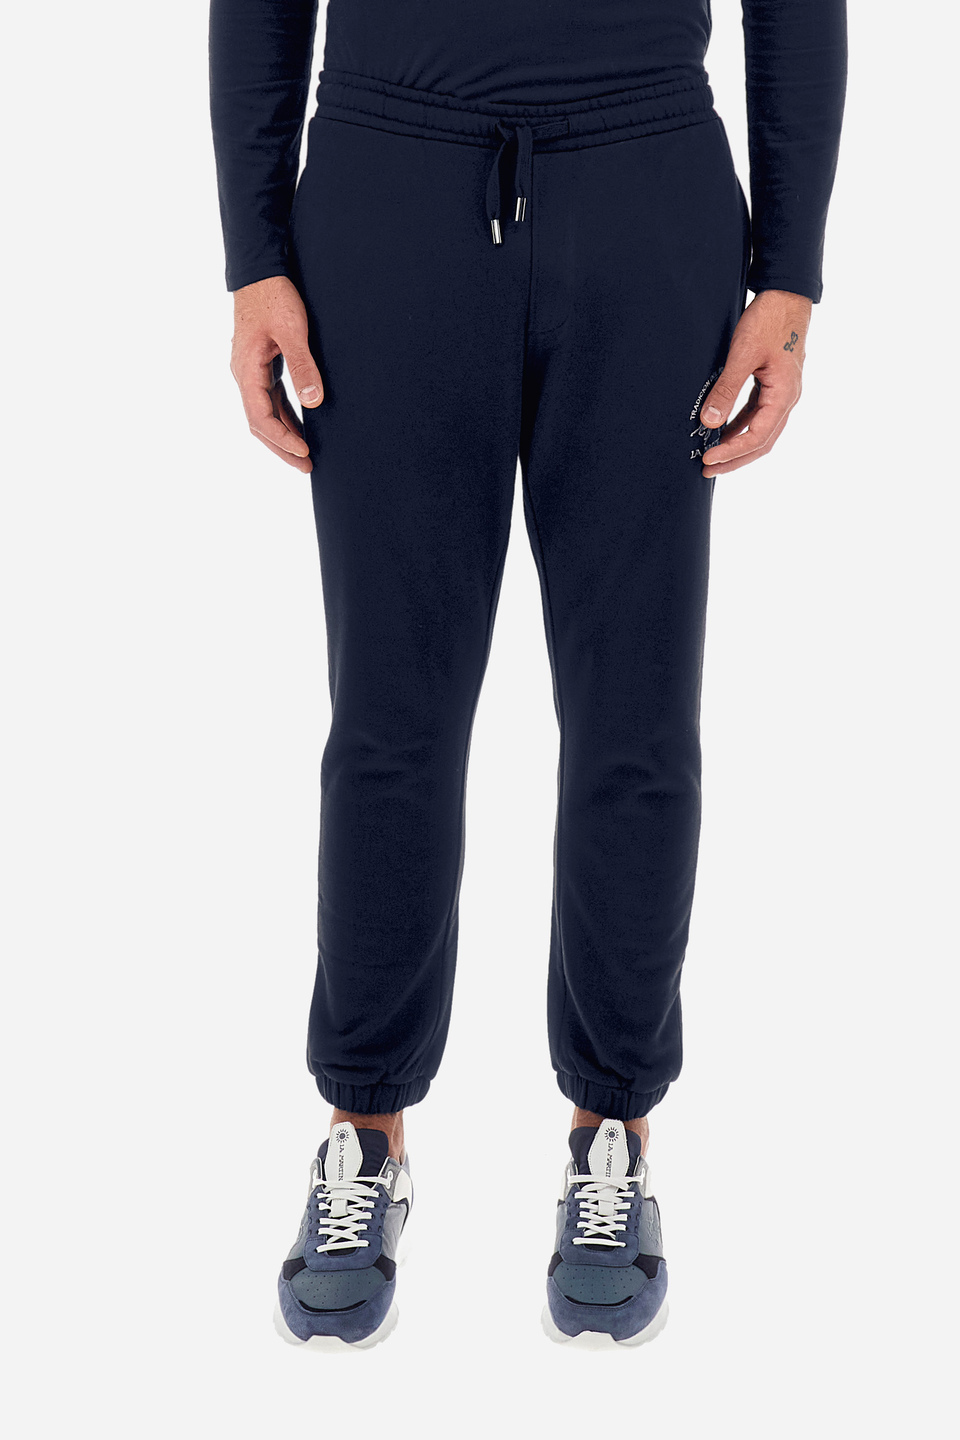 Pantalones de jogging hombre corte recto - Wallas | La Martina - Official Online Shop